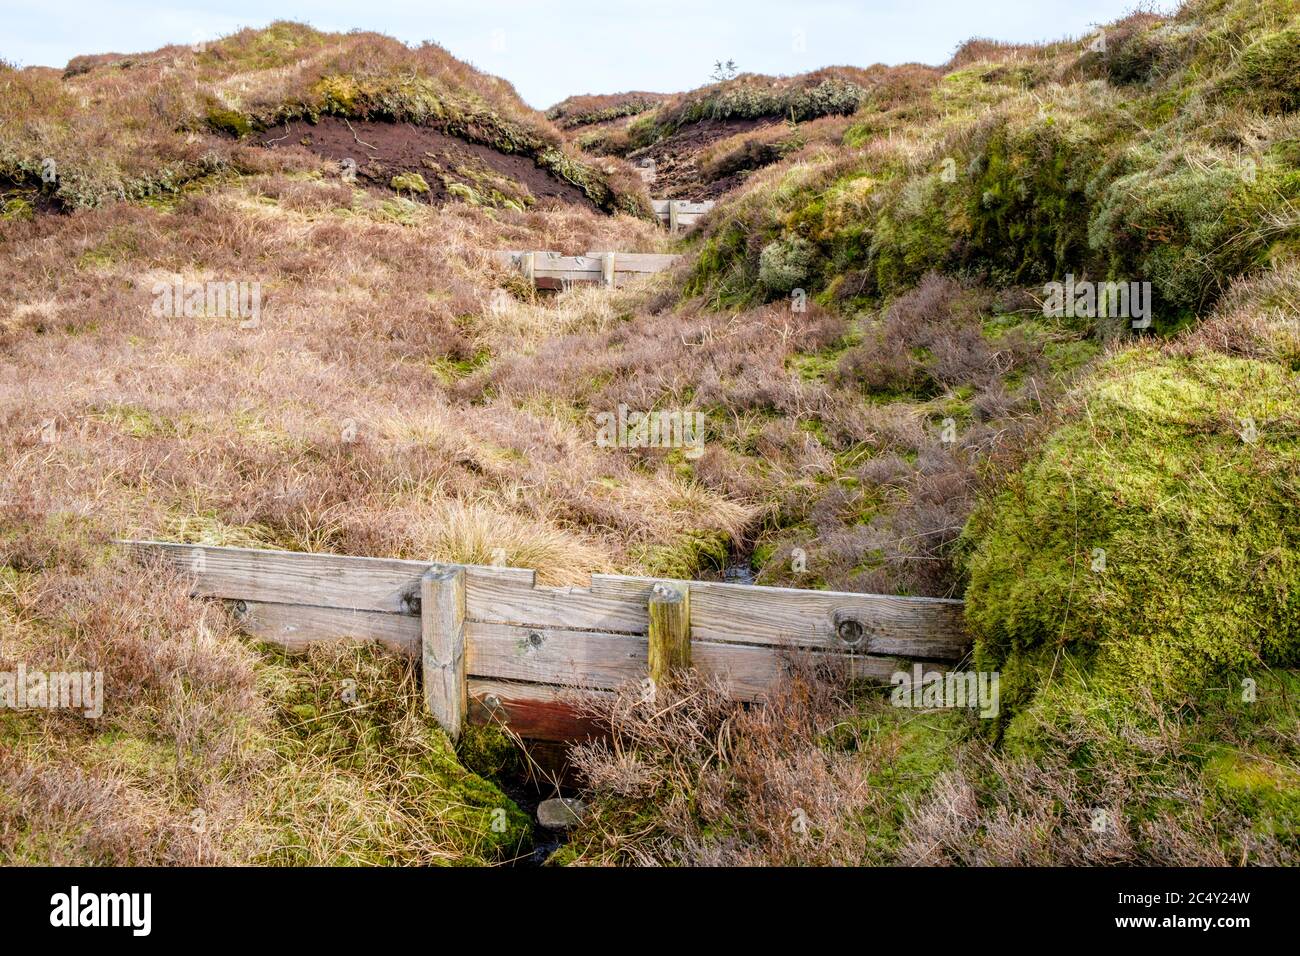 Bloqueo de barrancos usando presas de madera que impiden la erosión del páramo. Parte del trabajo de restauración de páramos en Kinder Scout, Derbyshire, Reino Unido Foto de stock